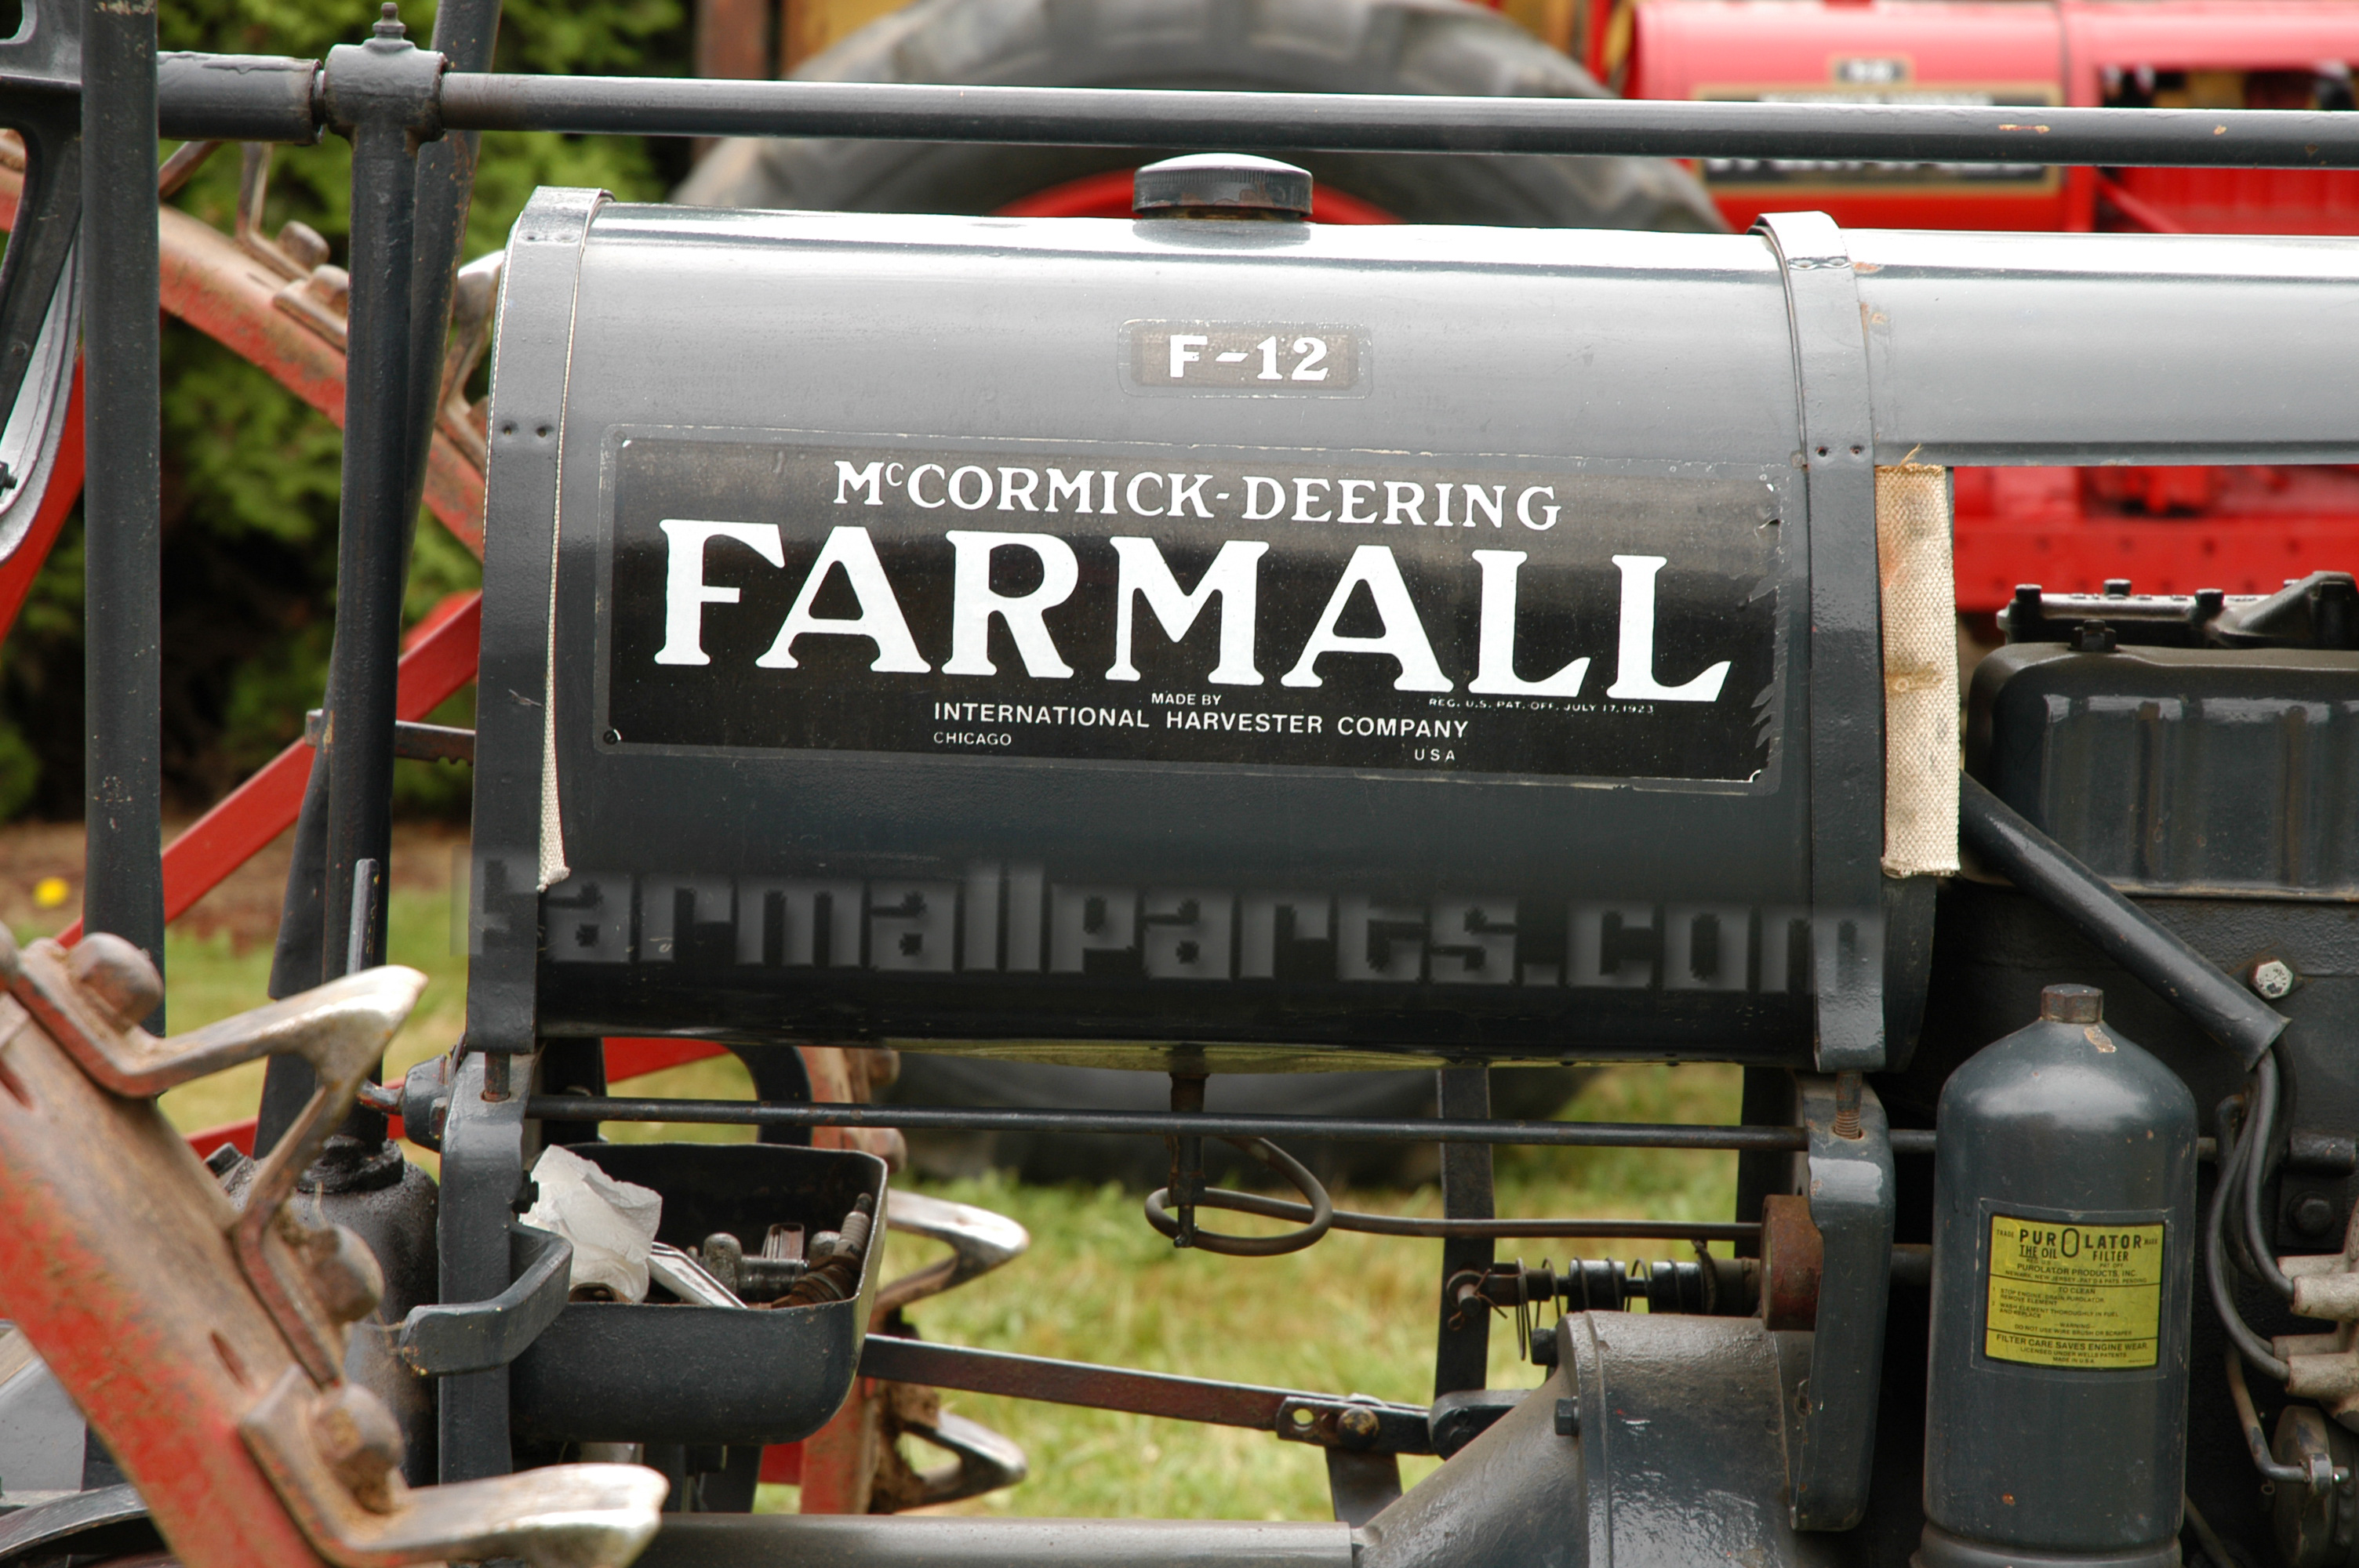 International Harvester Farmall Farmall F-12 Fuel Tank